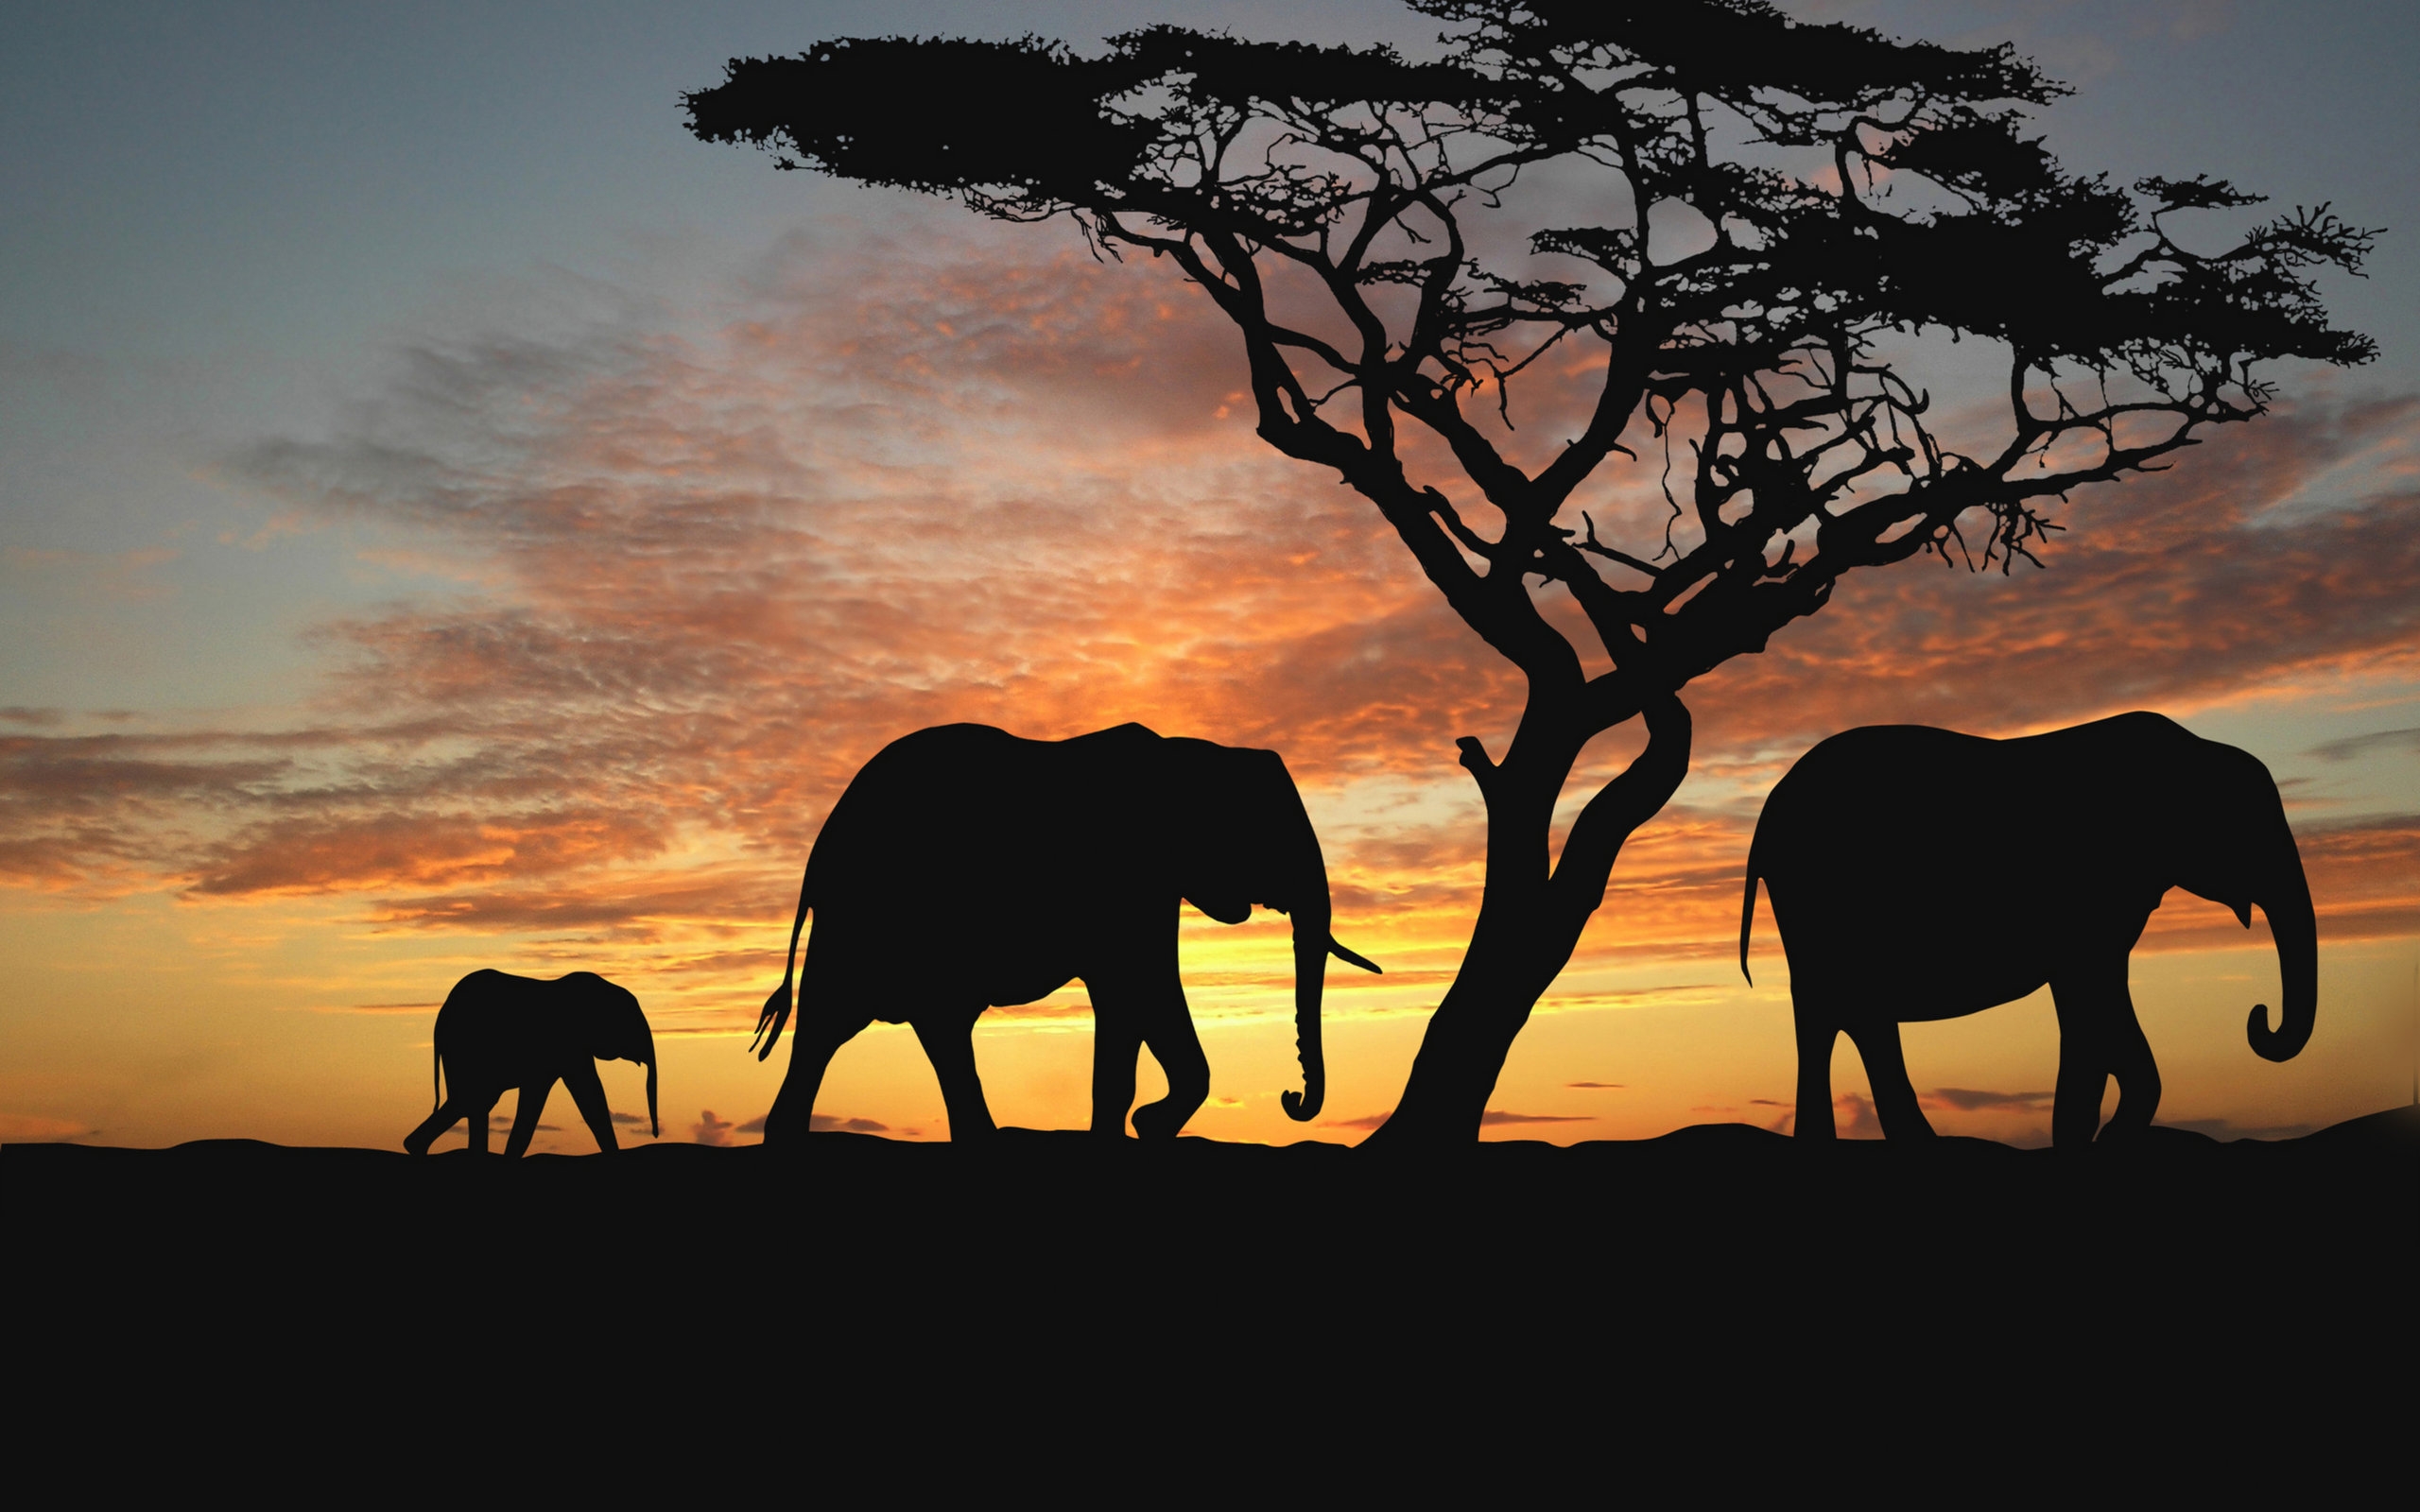 Elephants walking to westward for 2560 x 1600 widescreen resolution